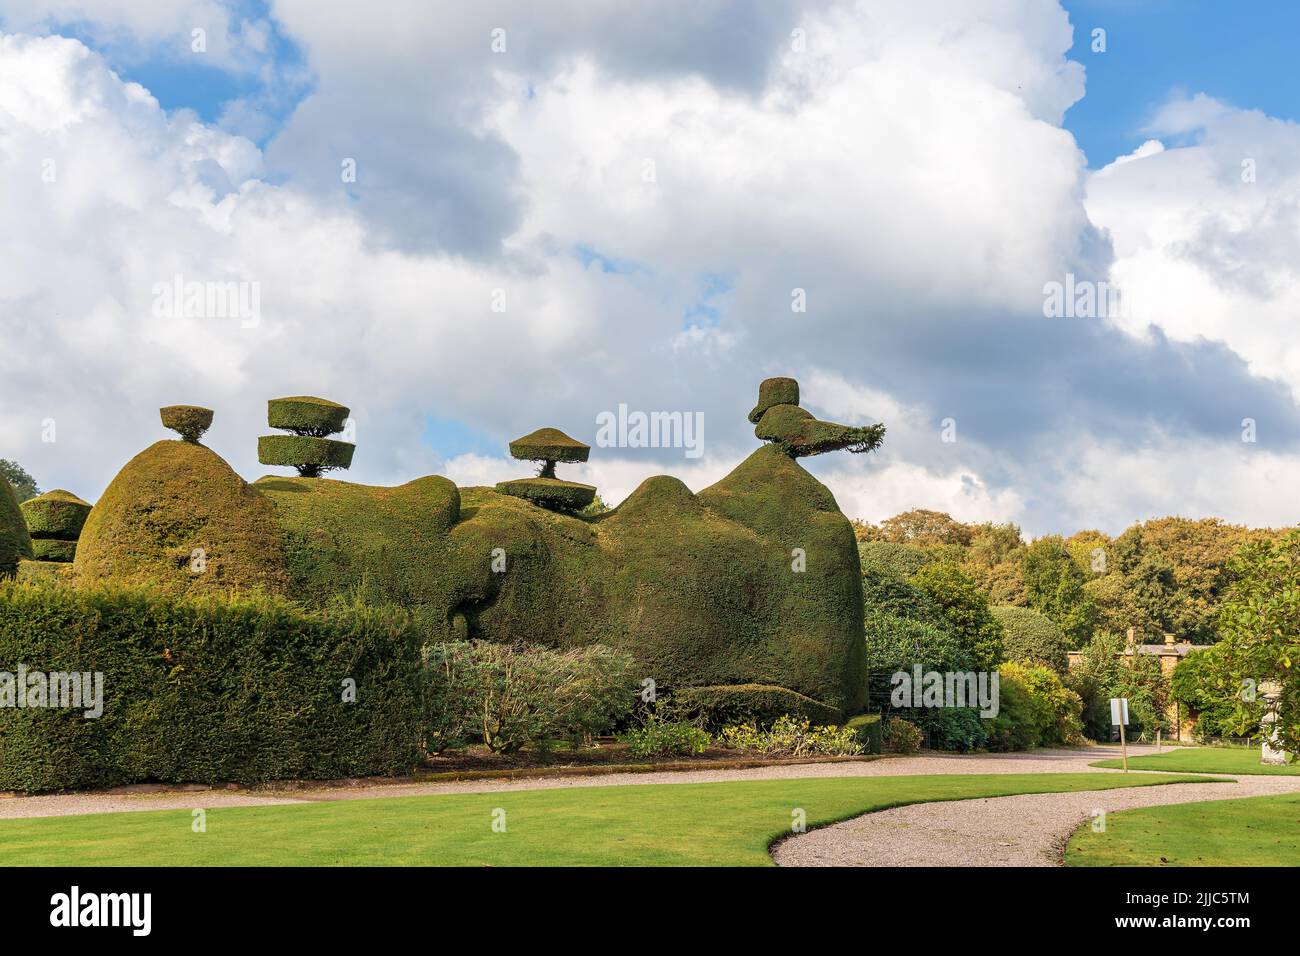 La caratteristica scultorea del topiario di Yew a Tatton Park, Regno Unito, è parte essenziale del tipico giardino vittoriano ed è ancora oggi popolare. Foto Stock